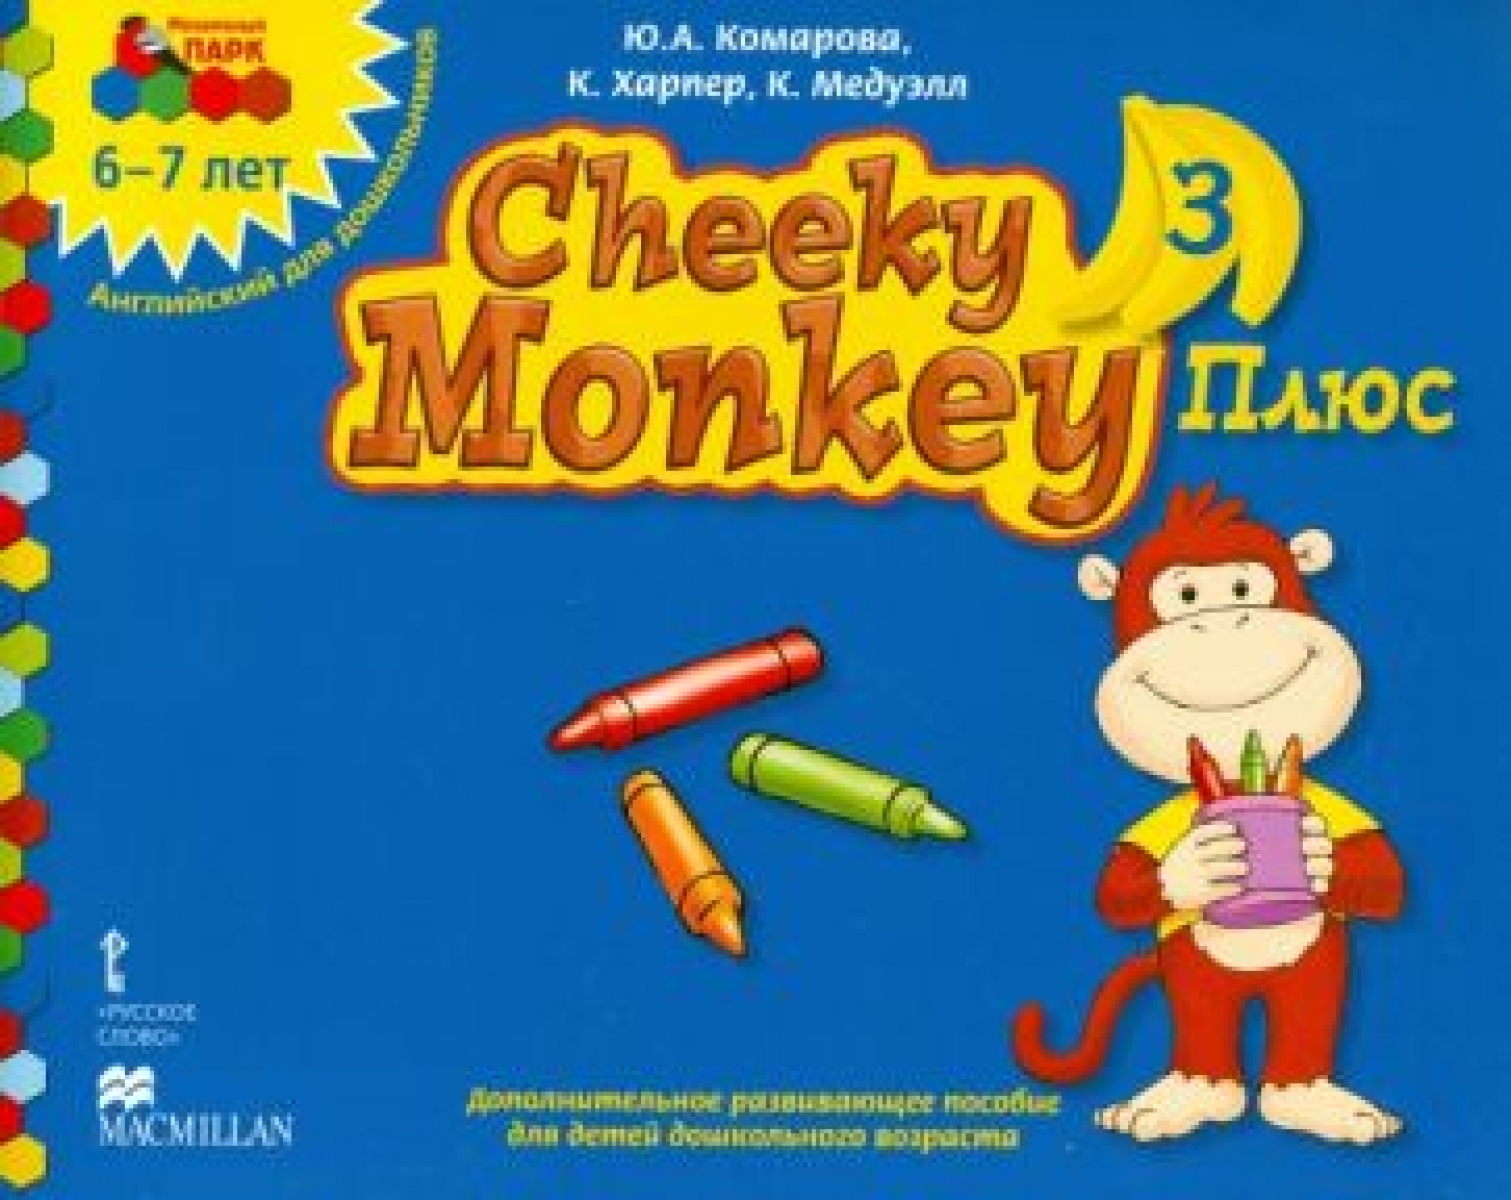     . Cheeky Monkey 3 . ...  ....6-7() 